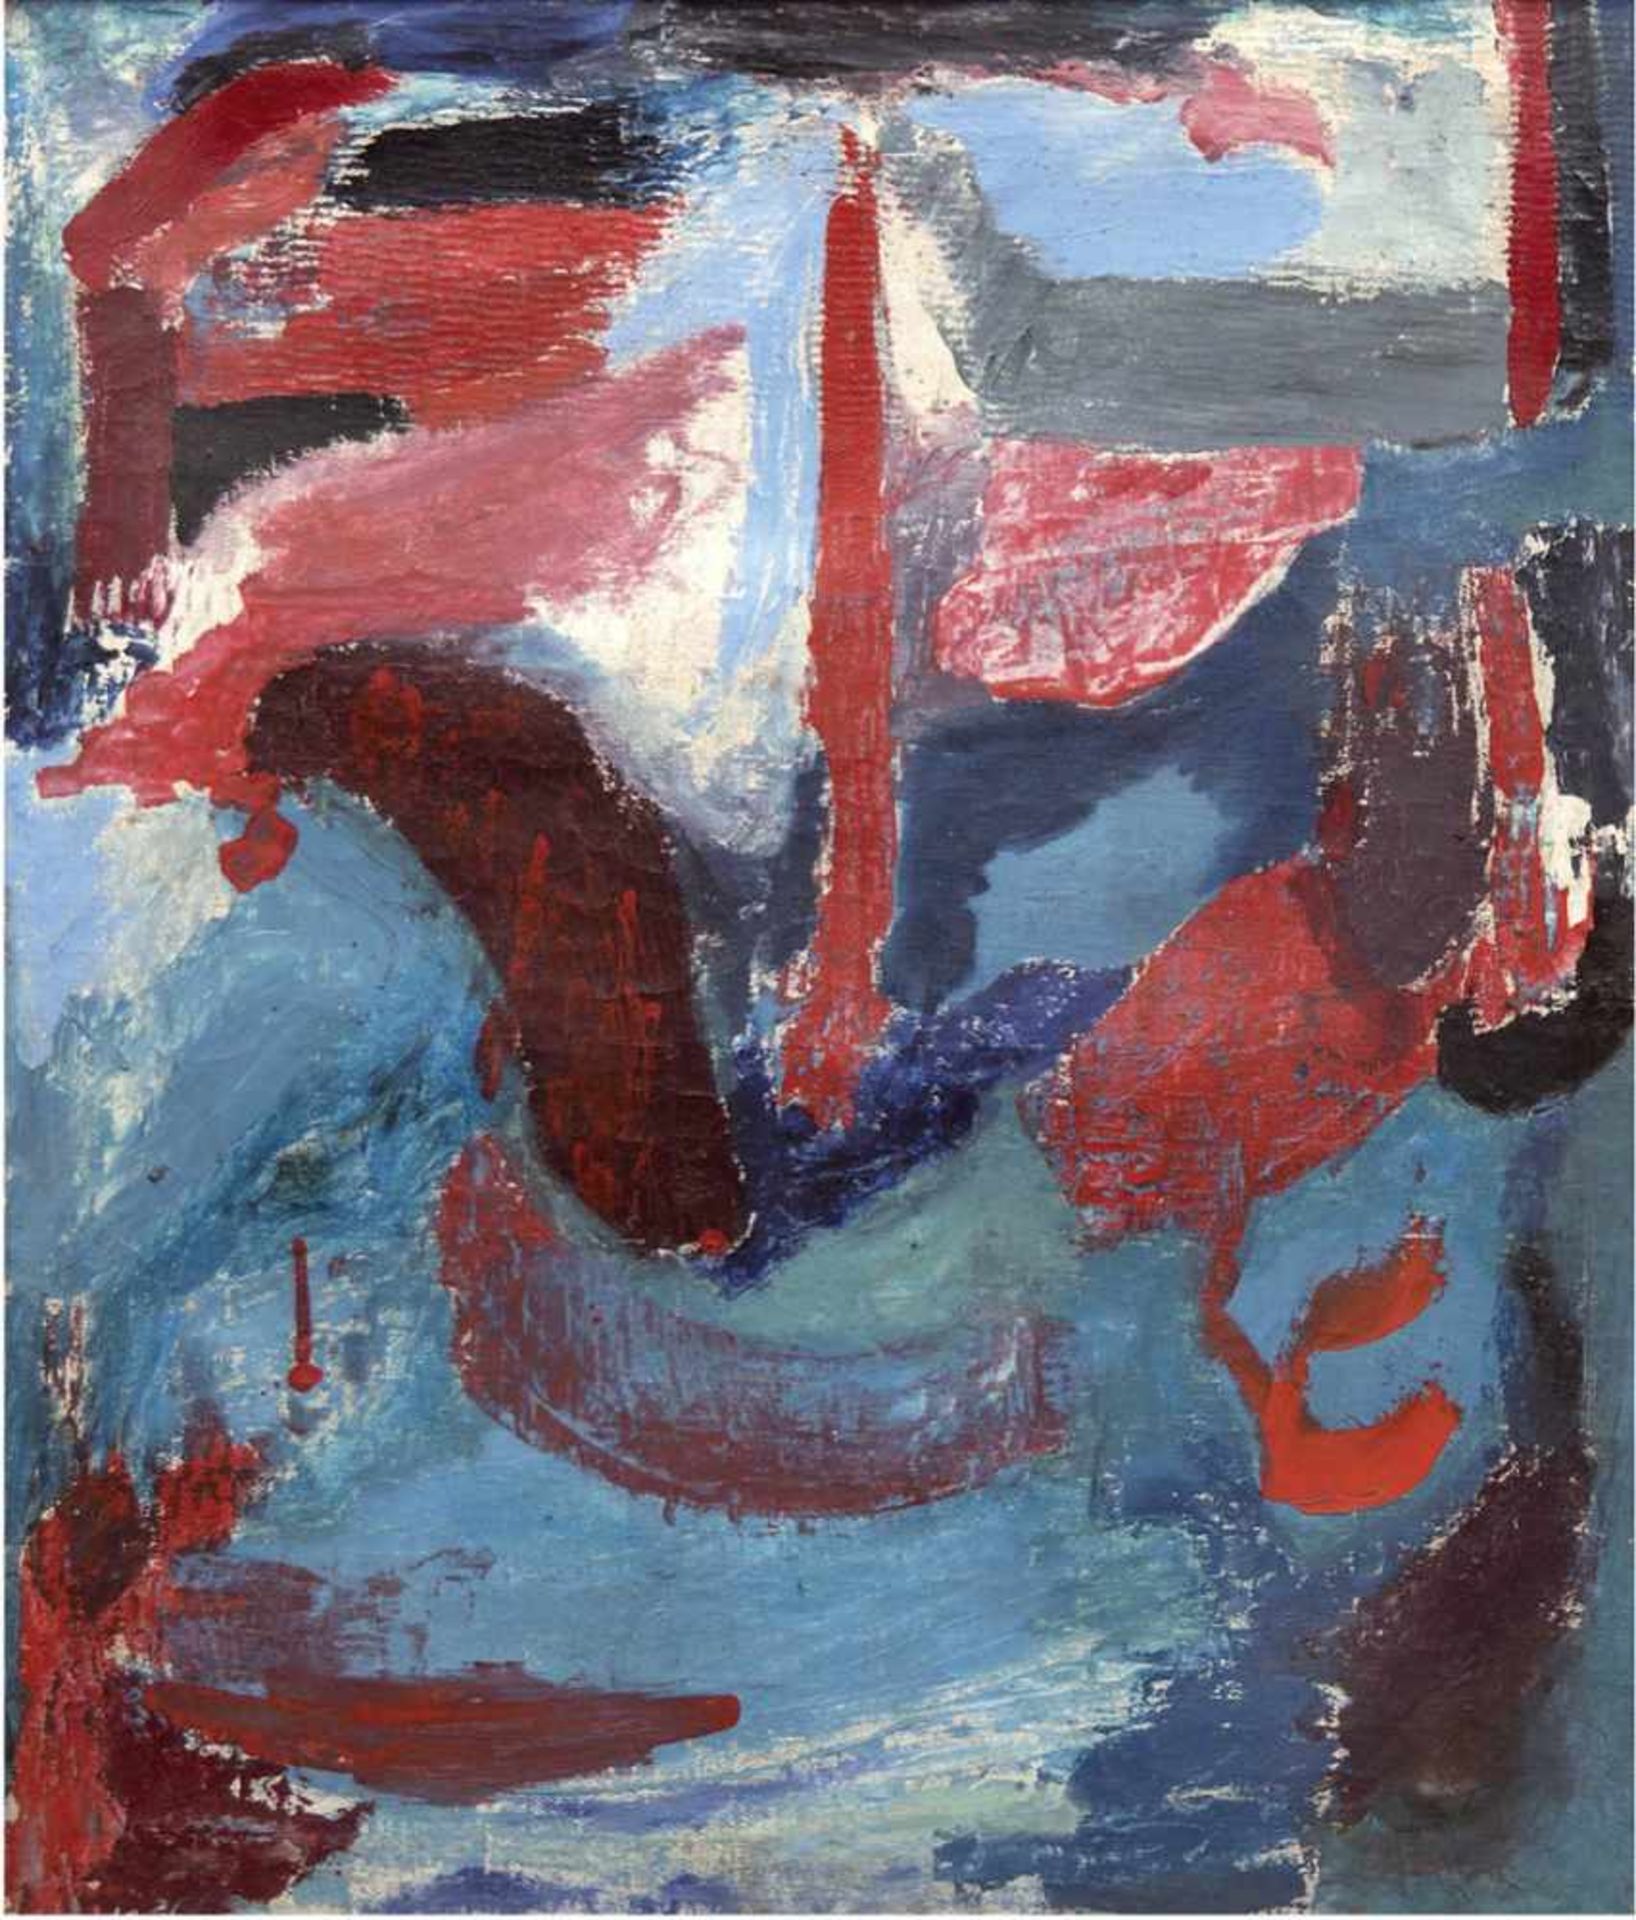 Expressionist um 1950/60, Umkreis Jawlensky "Gesicht", Öl/Lw., unsign., mehrereHinterlegungen, 62x53